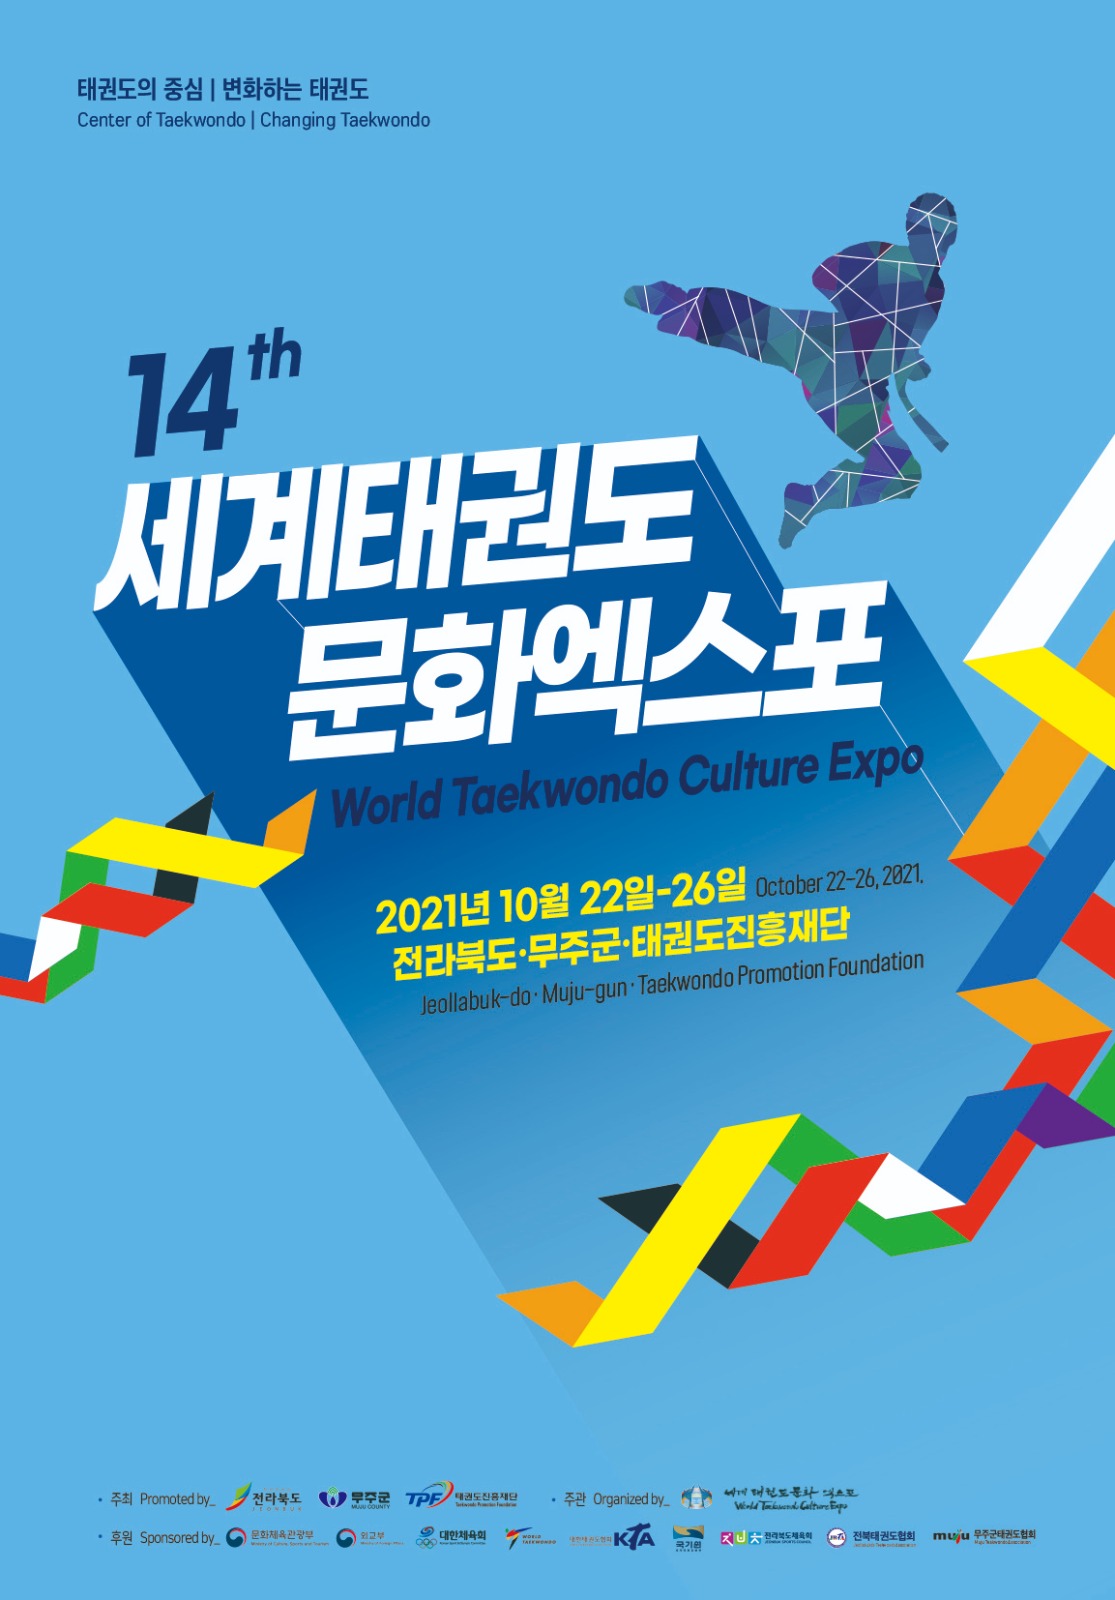 World Taekwondo Culture Expo tendrá competencia en línea